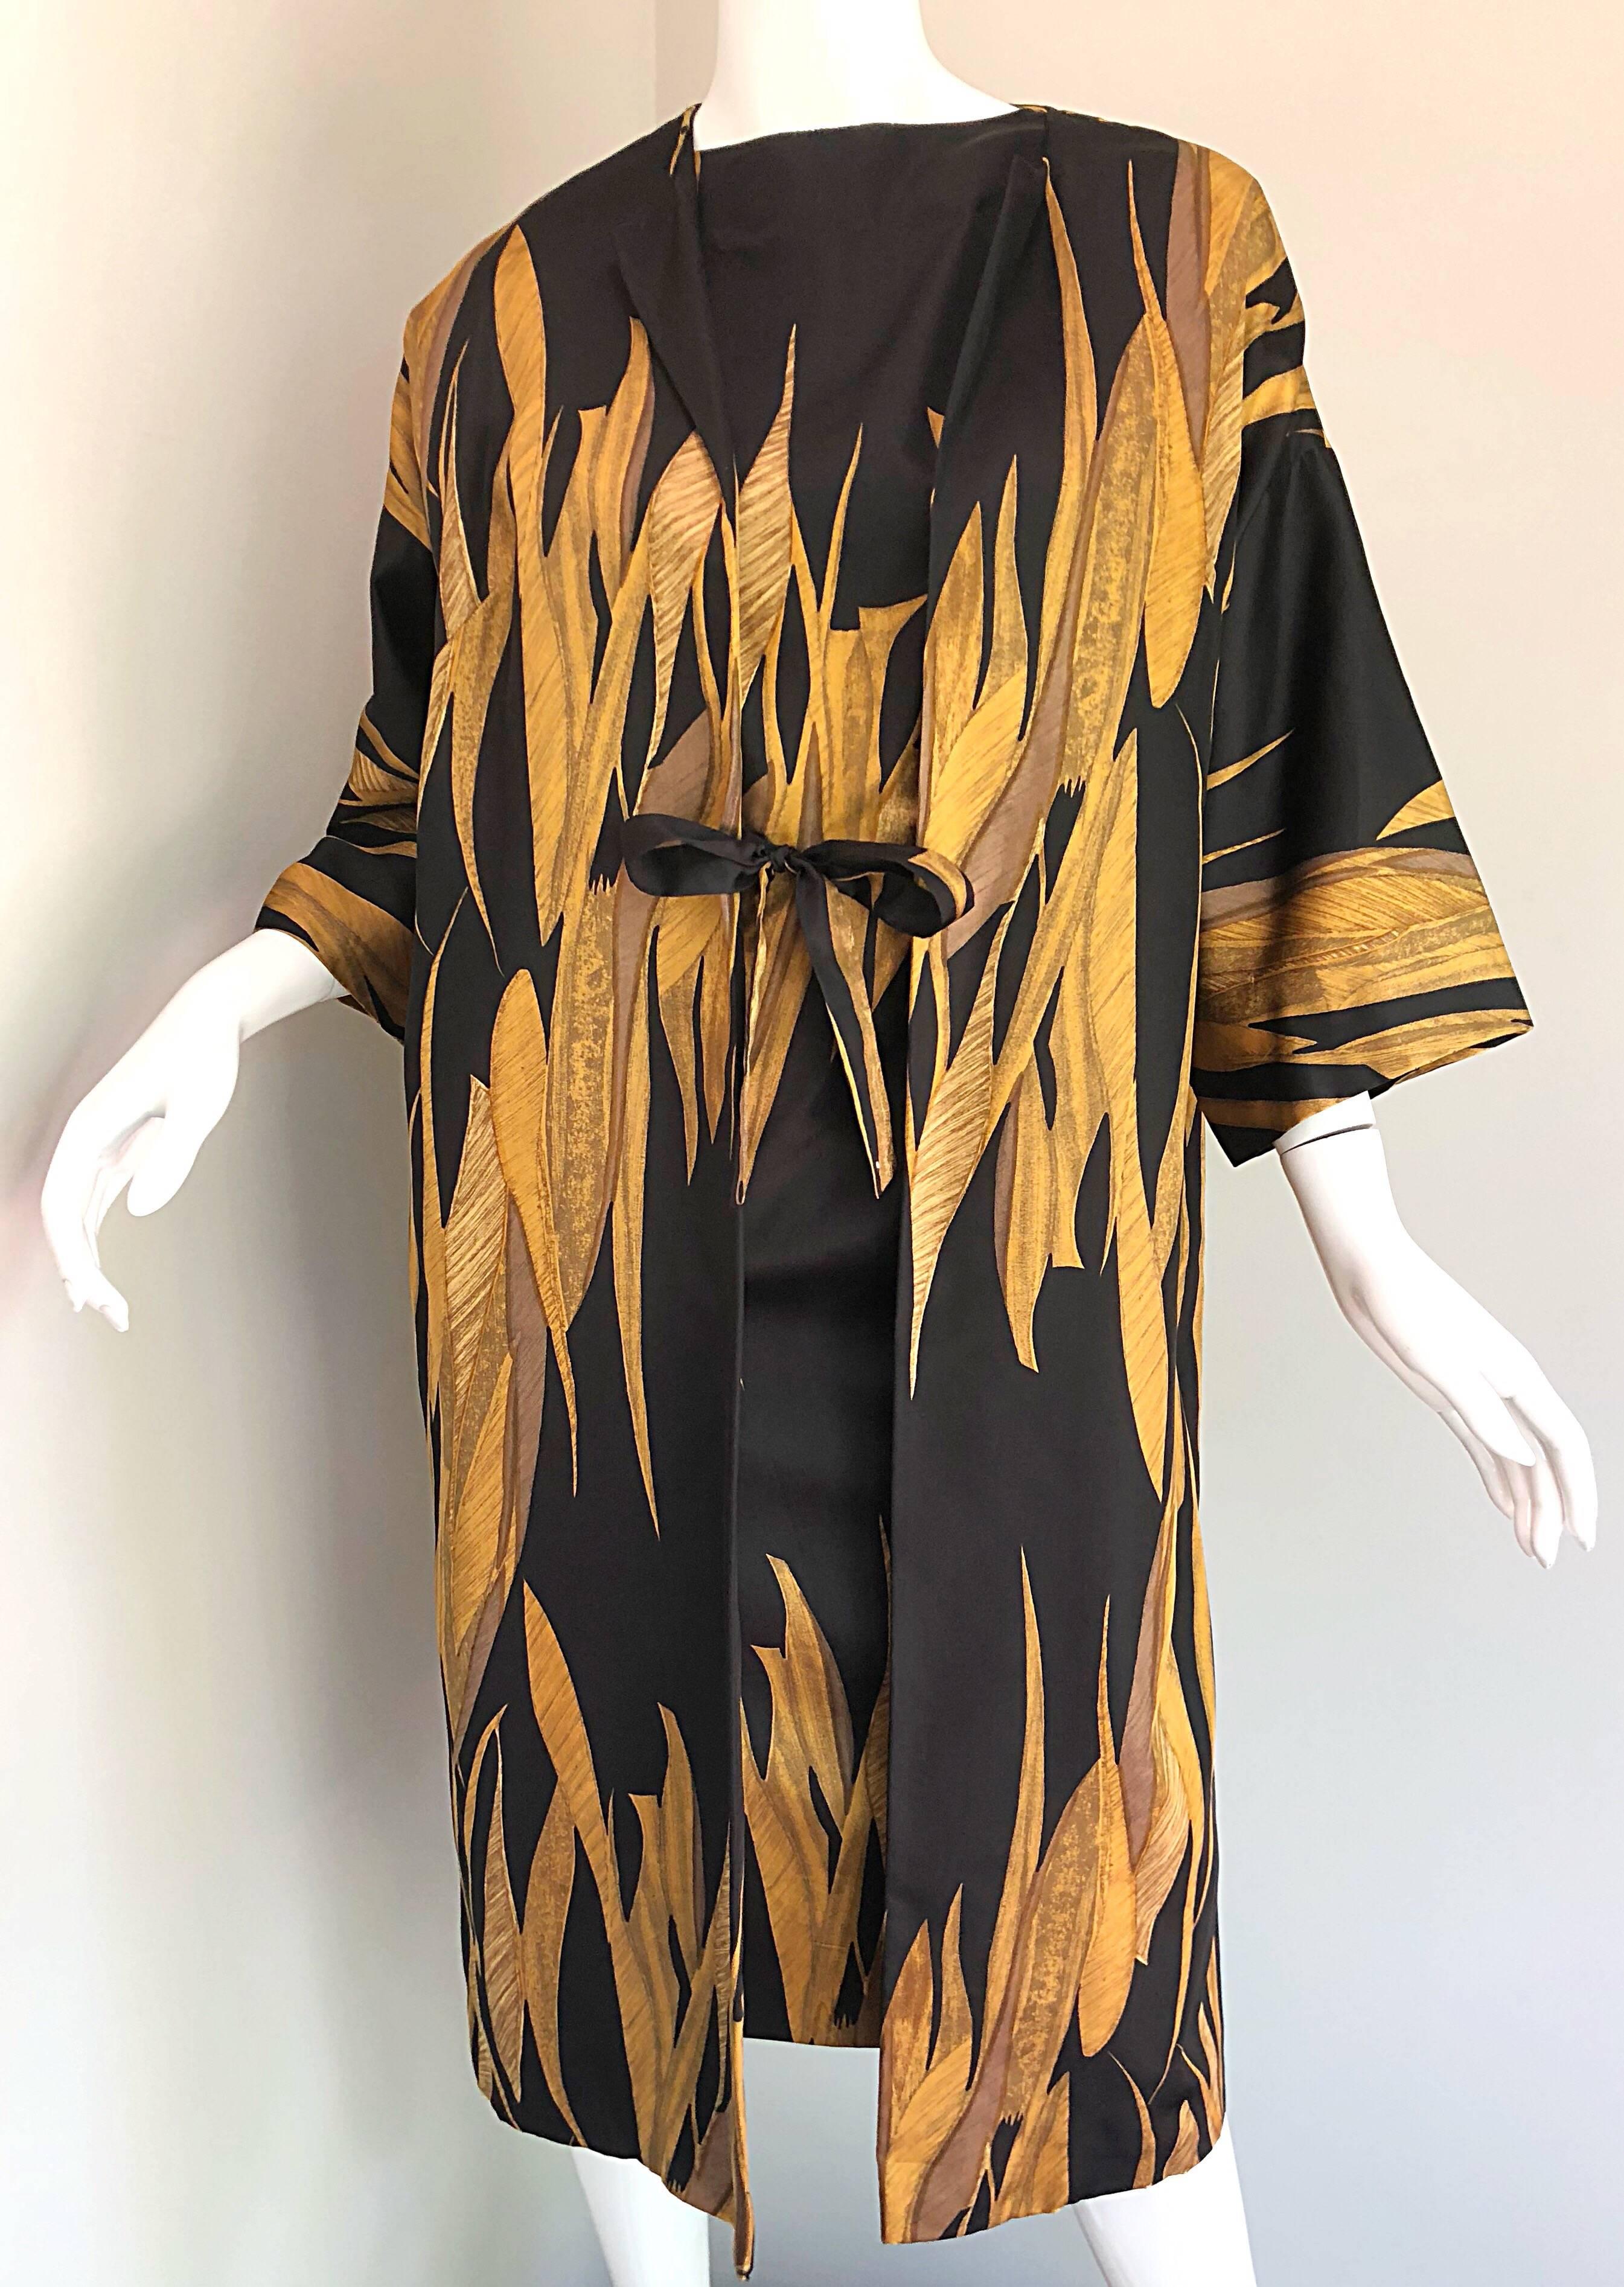 Rare 1950s Neiman Marcus Black + Gold Wheat Print Vintage Dress & Kimono Jacket 4